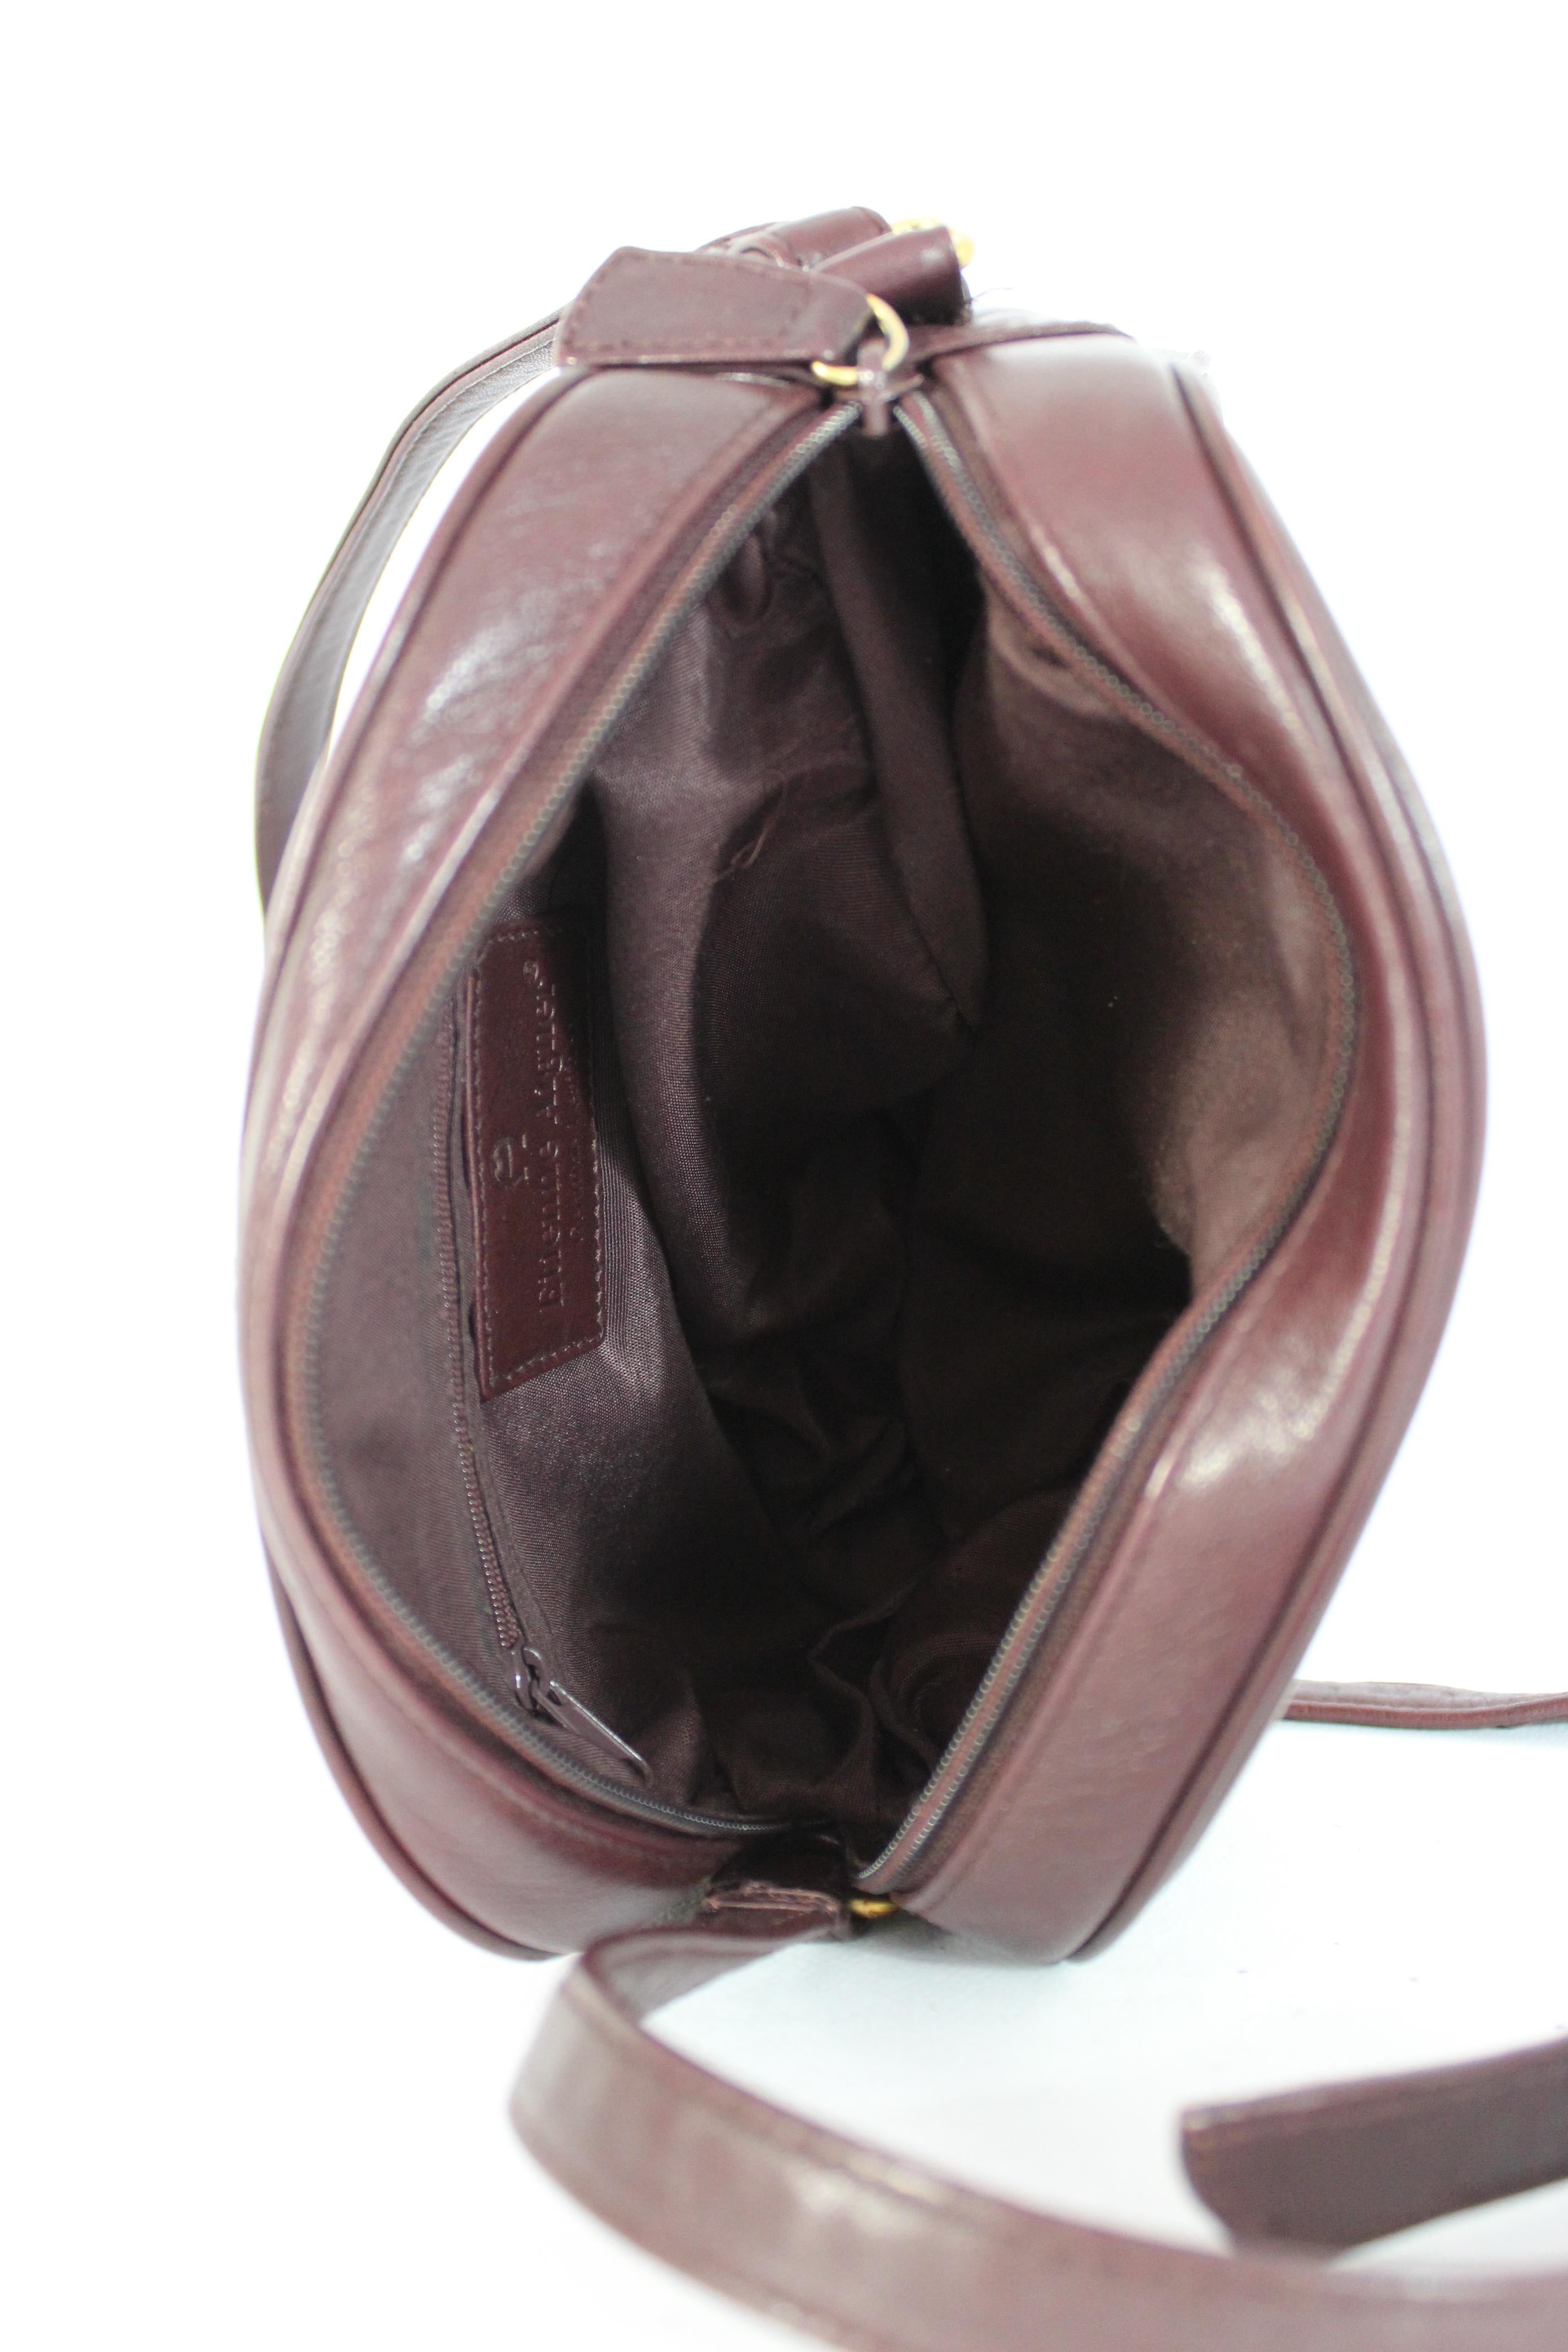 Etienne Aigner Burgundy Leather Shoulder Bag 1980s 1